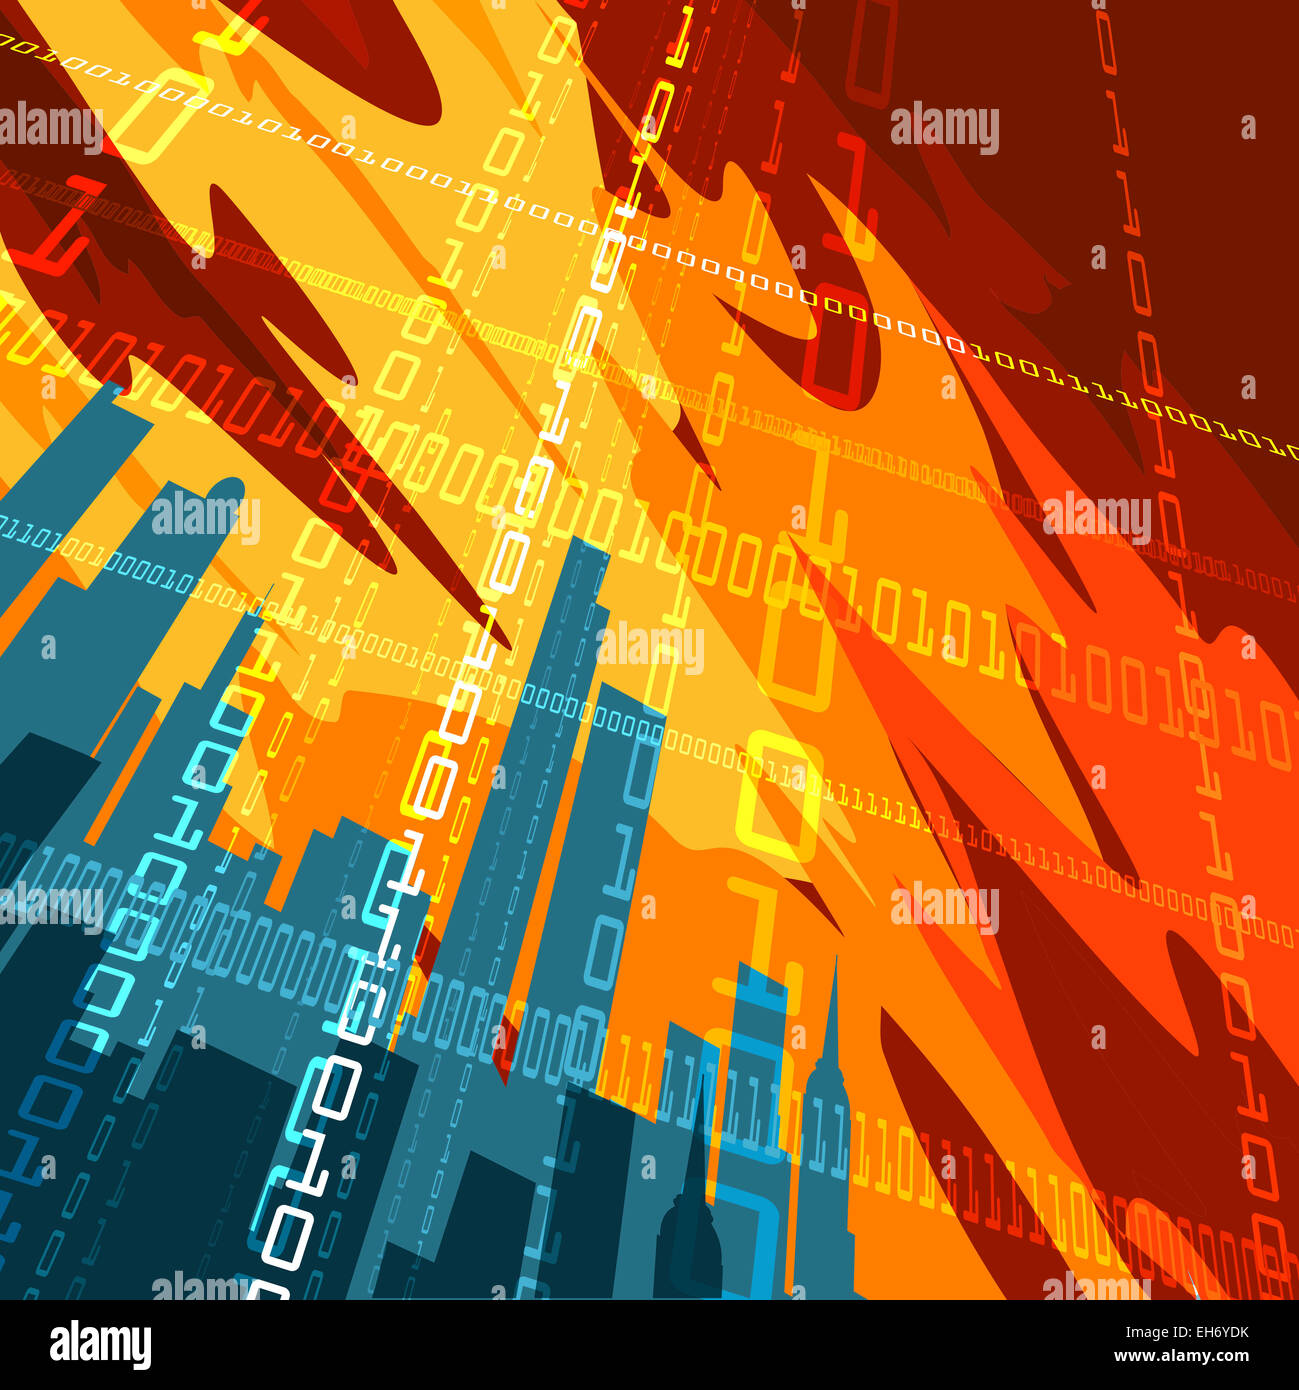 Abstrakte Darstellung von Hochhäusern und binären Code-Zeilen gegen rote Himmel im Plakat Stil gezeichnet Stockfoto